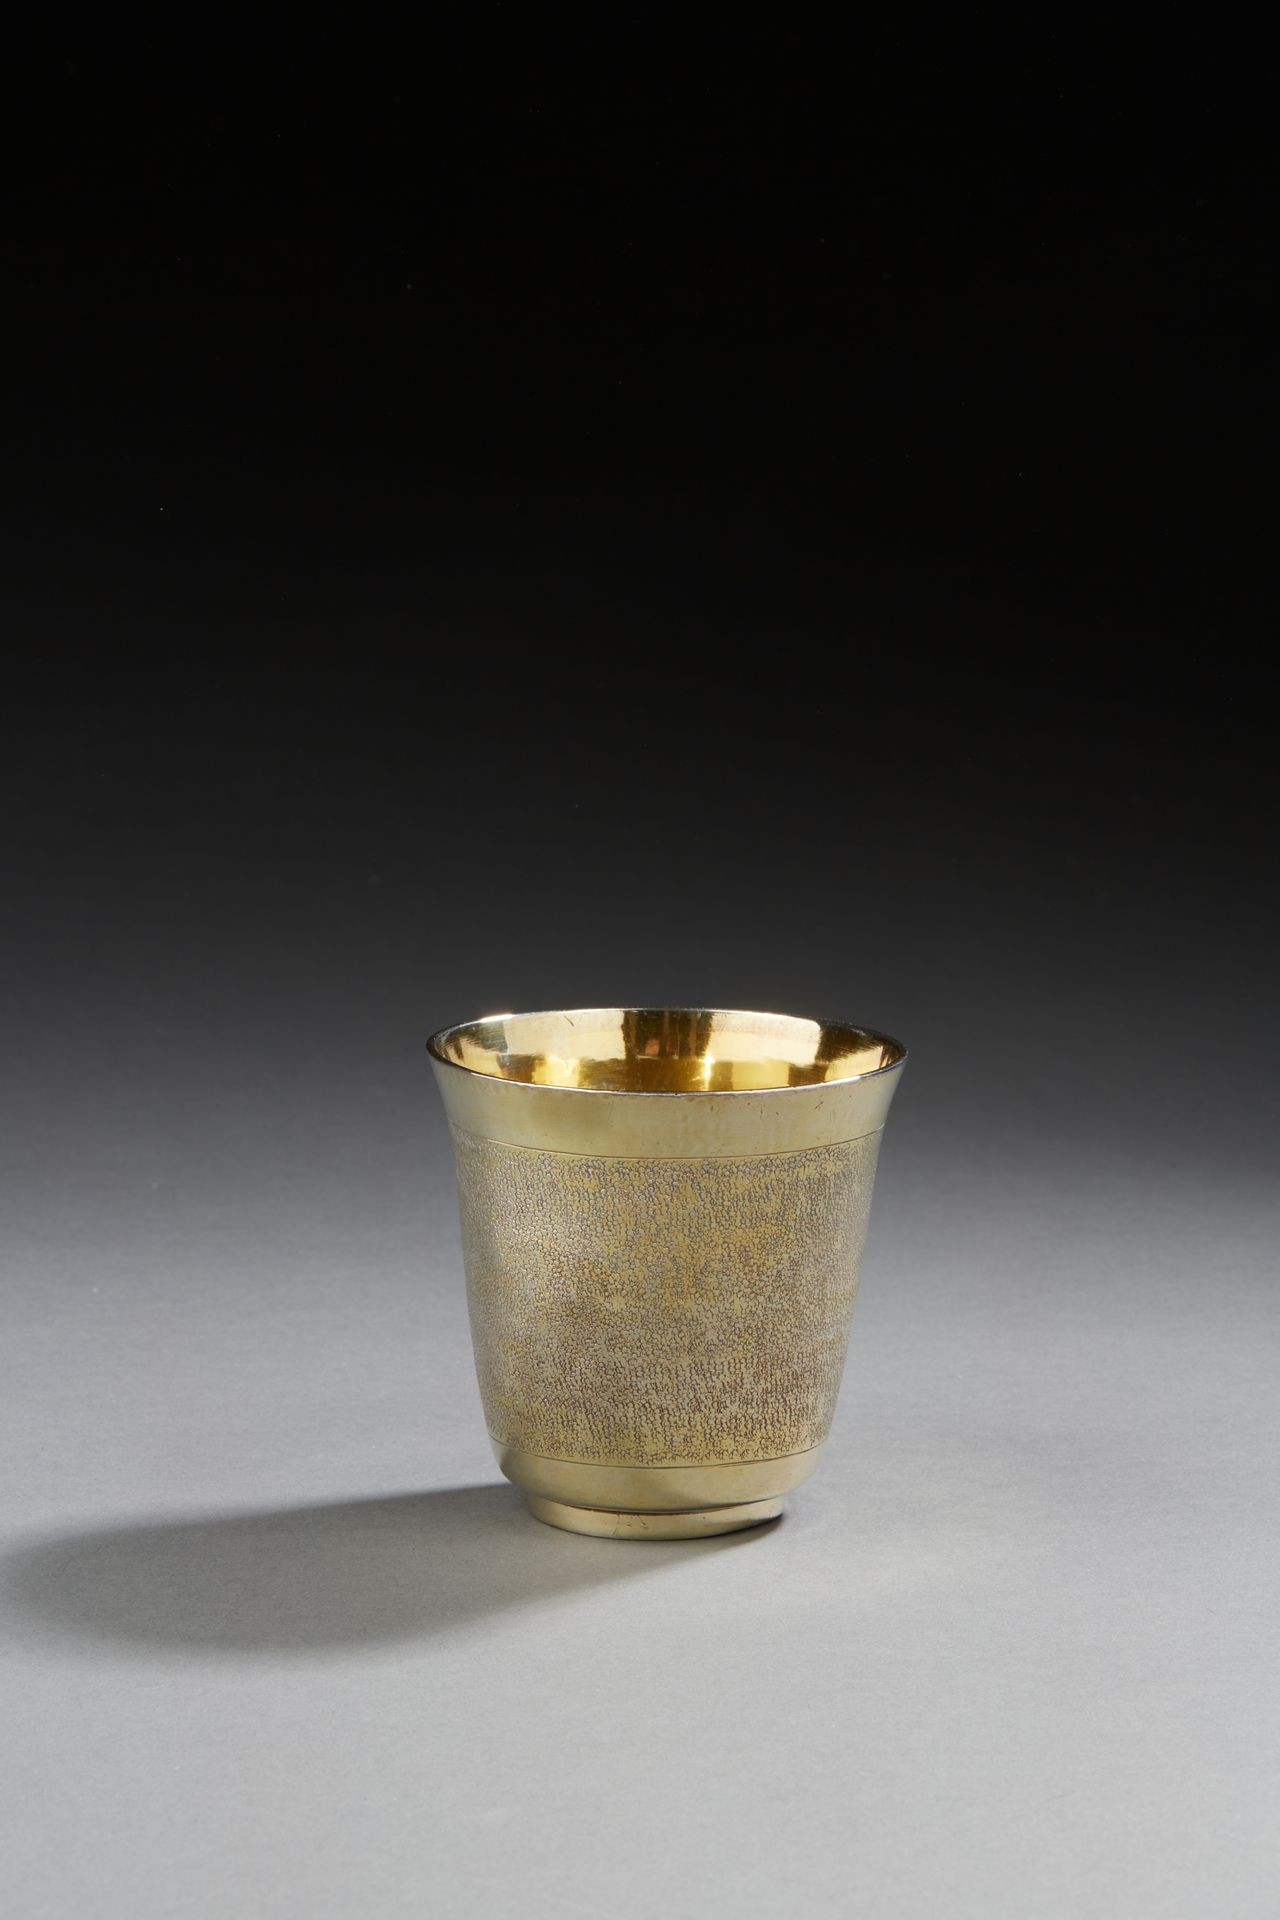 Null PARIS 1690 - 1691
Un bicchiere in vermeil appoggiato su una cornice, che si&hellip;